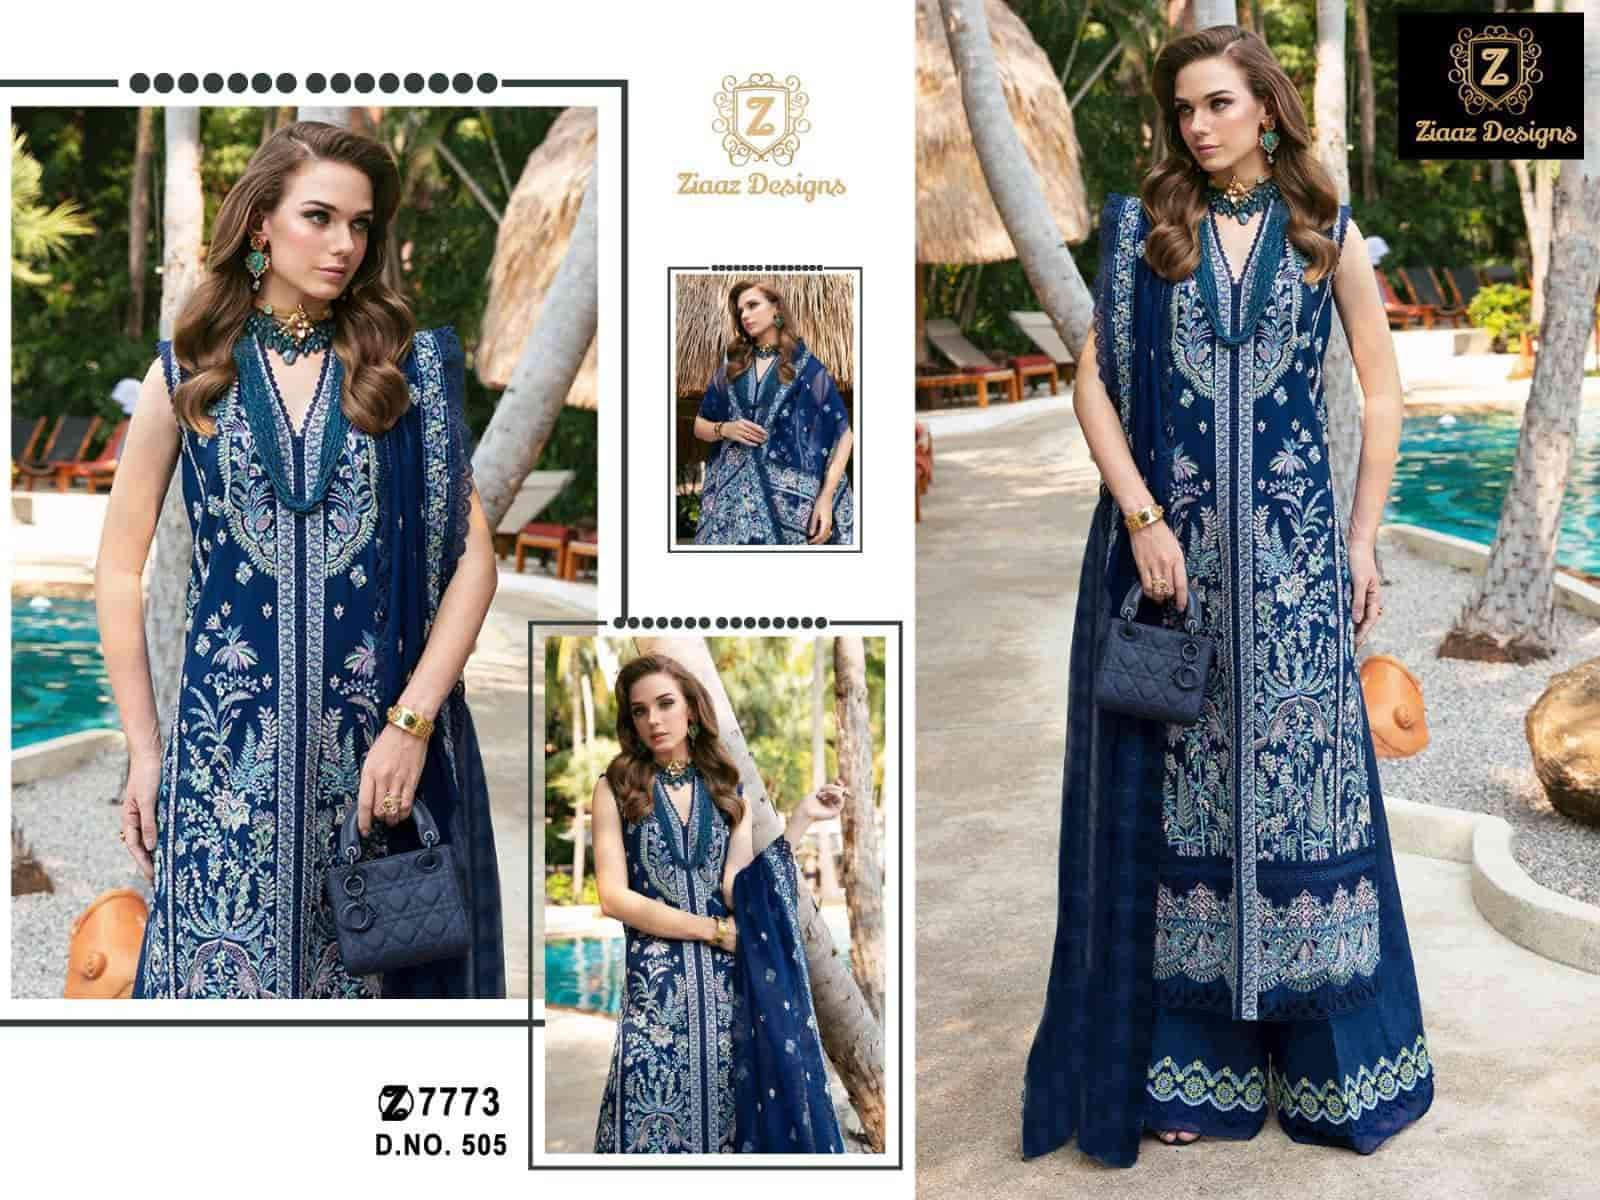 Ziaaz Designs 505 Exclusive Heavy Designer Style Cotton Salwar Suit Exporter